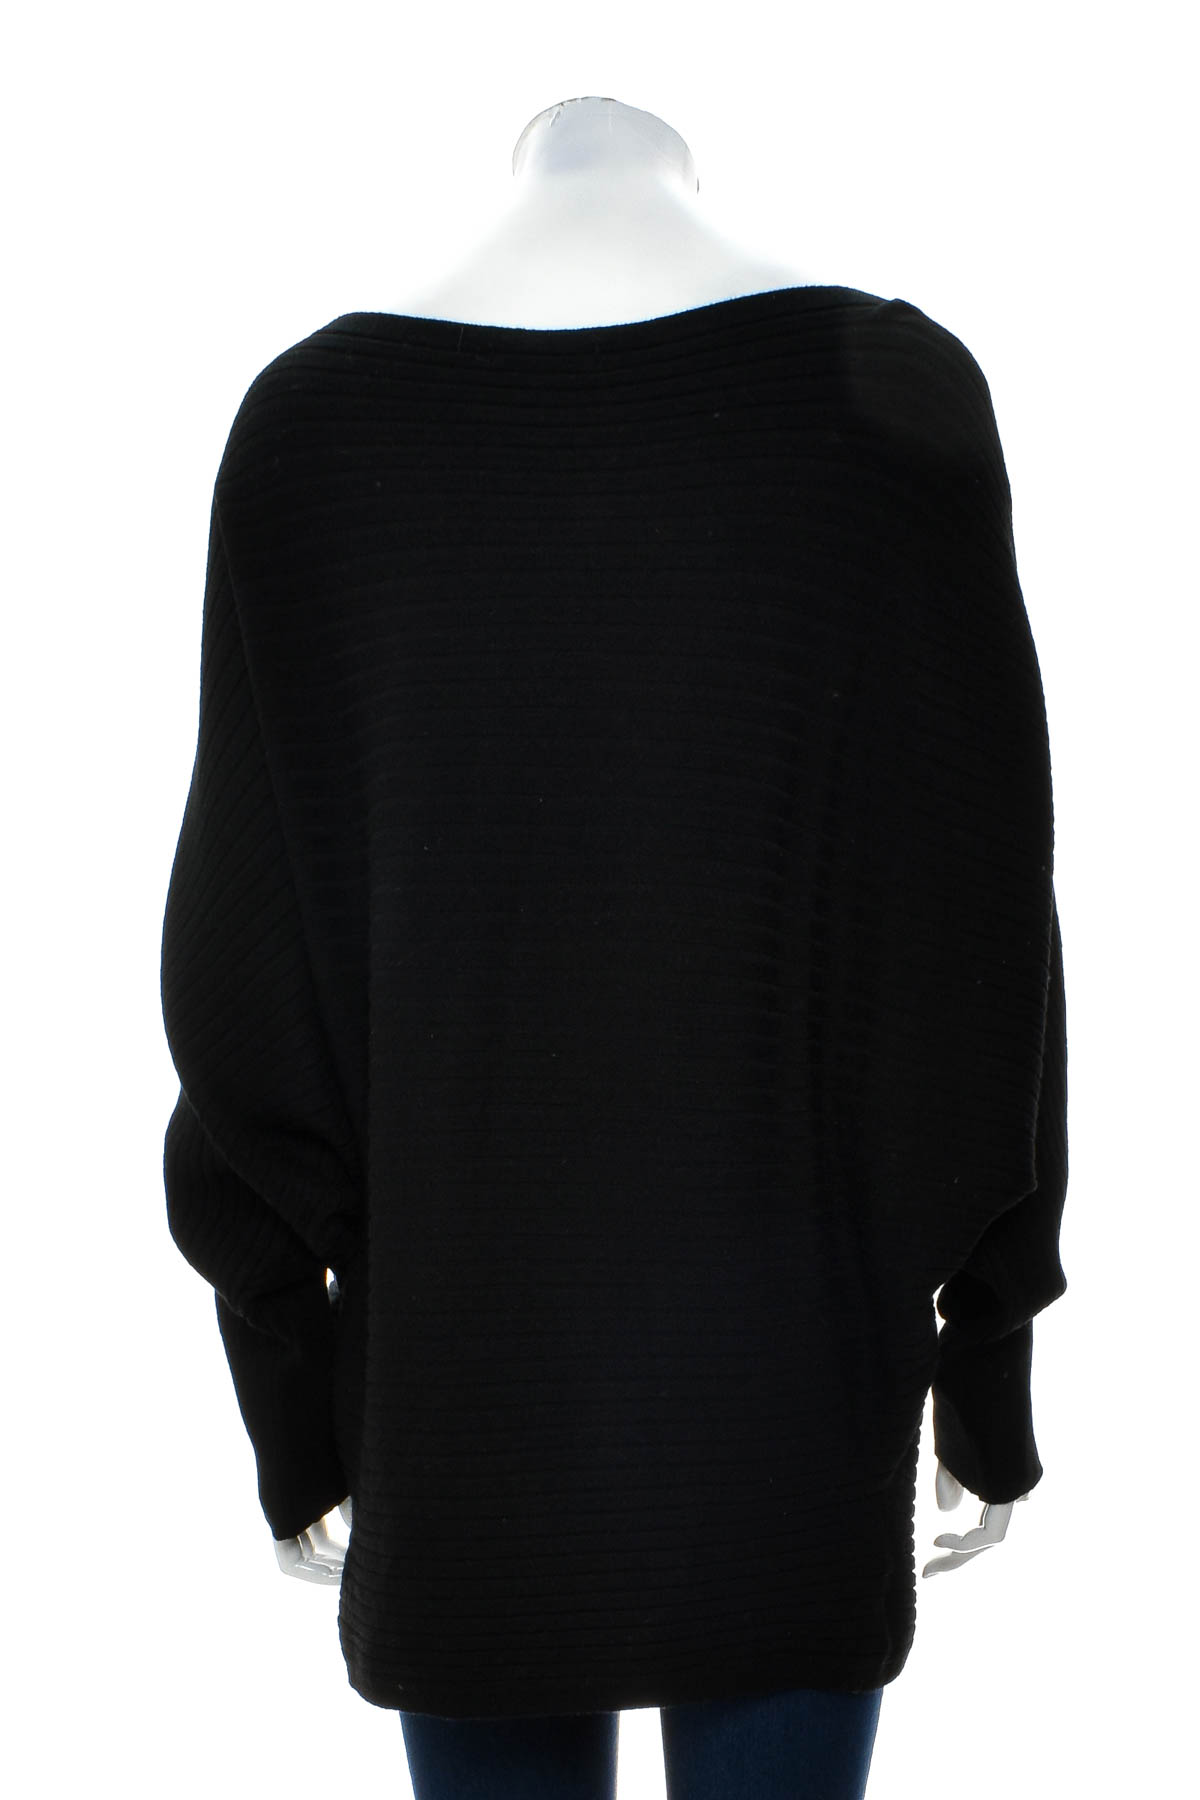 Women's sweater - Jean Pascale - 1